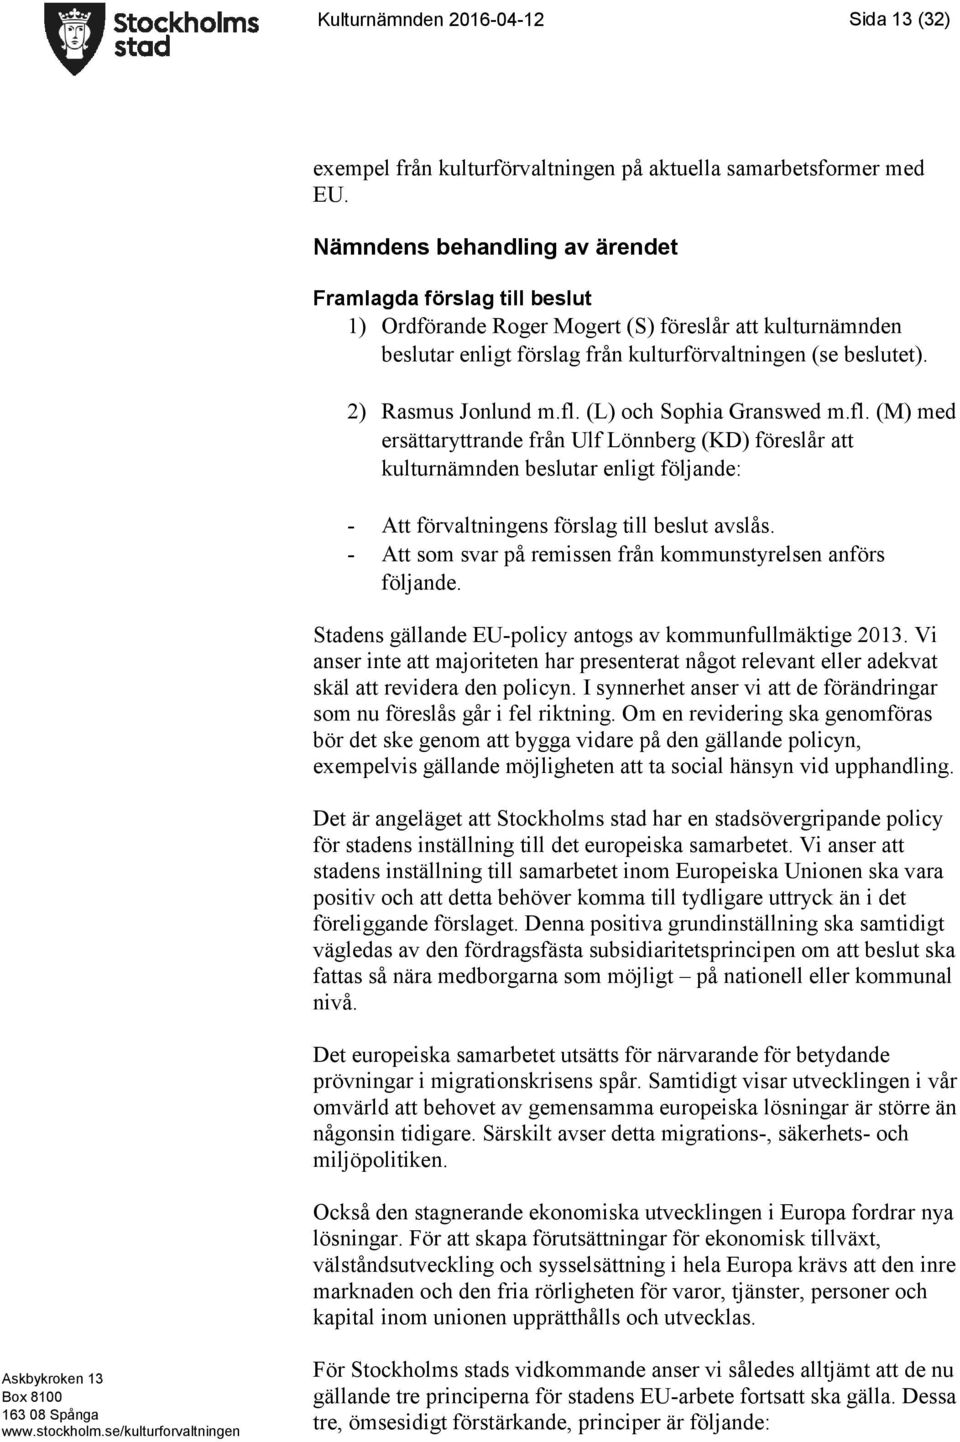 2) Rasmus Jonlund m.fl. (L) och Sophia Granswed m.fl. (M) med ersättaryttrande från Ulf Lönnberg (KD) föreslår att kulturnämnden beslutar enligt följande: - Att förvaltningens förslag till beslut avslås.